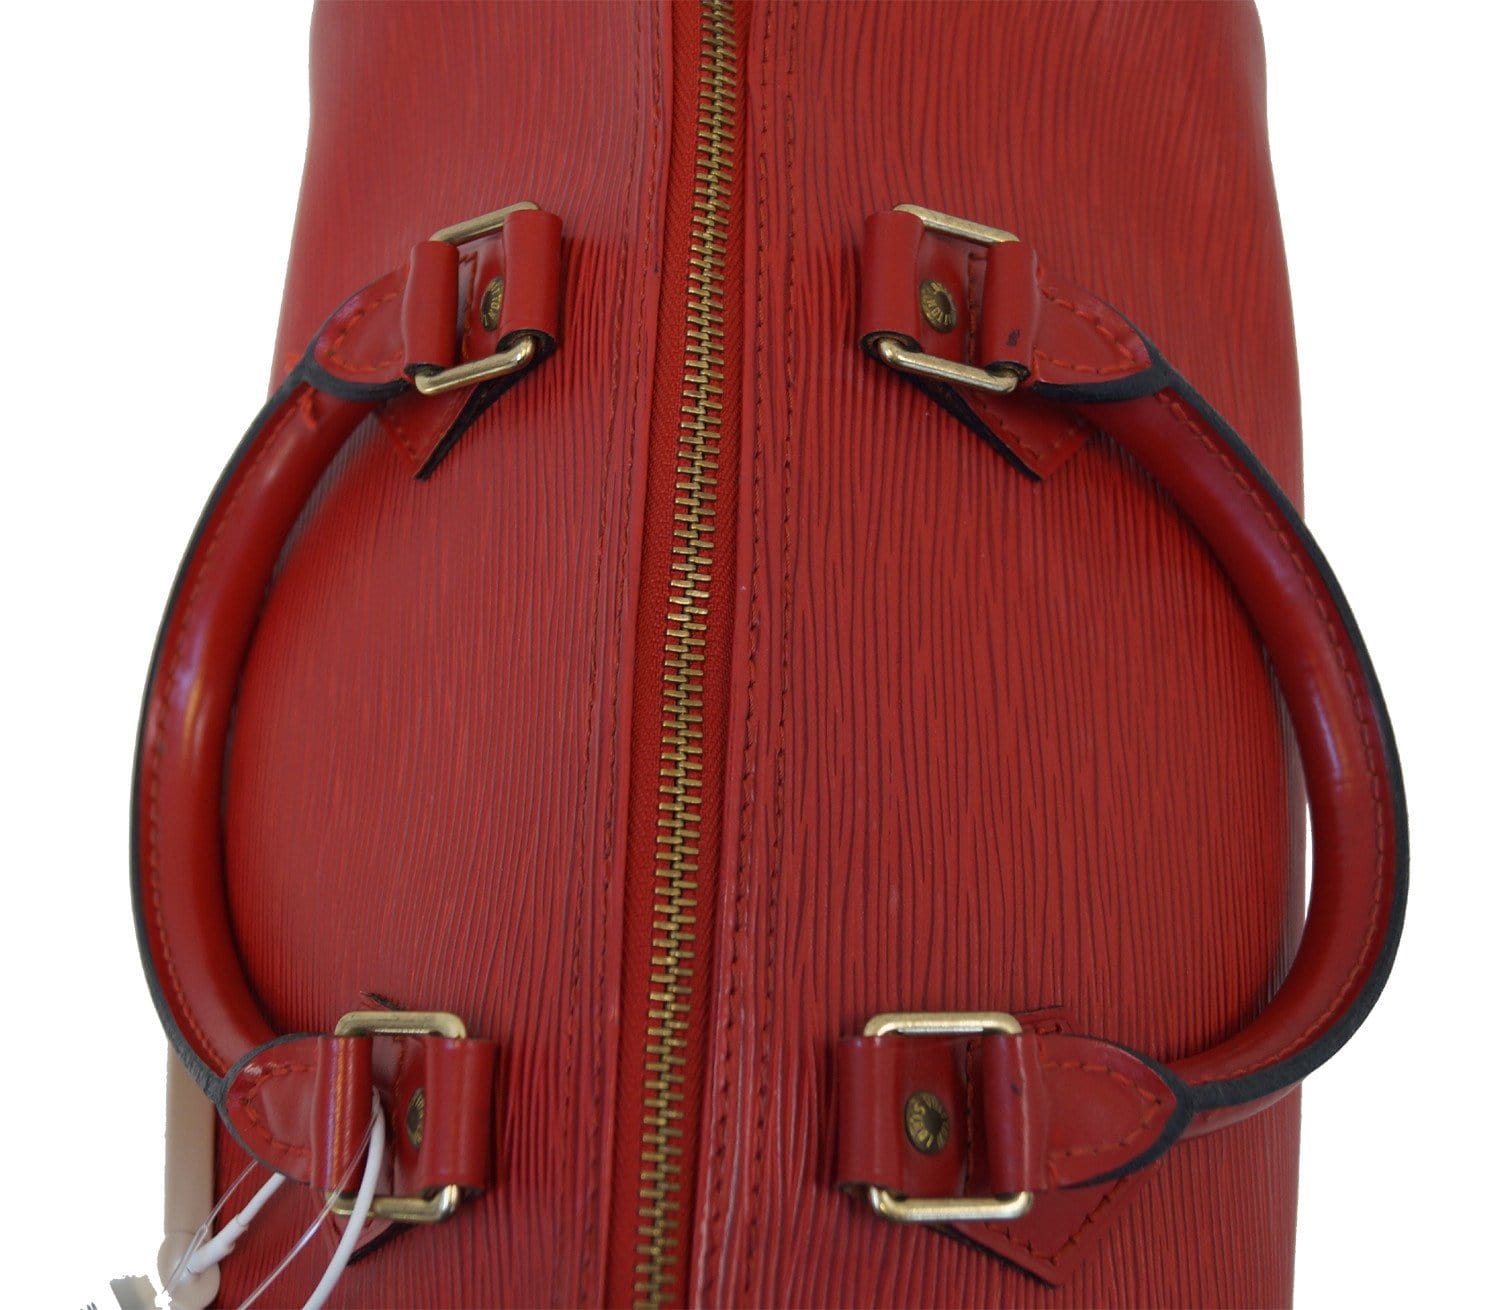 Louis Vuitton - Speedy - Beige/Cream Epi Leather handbag